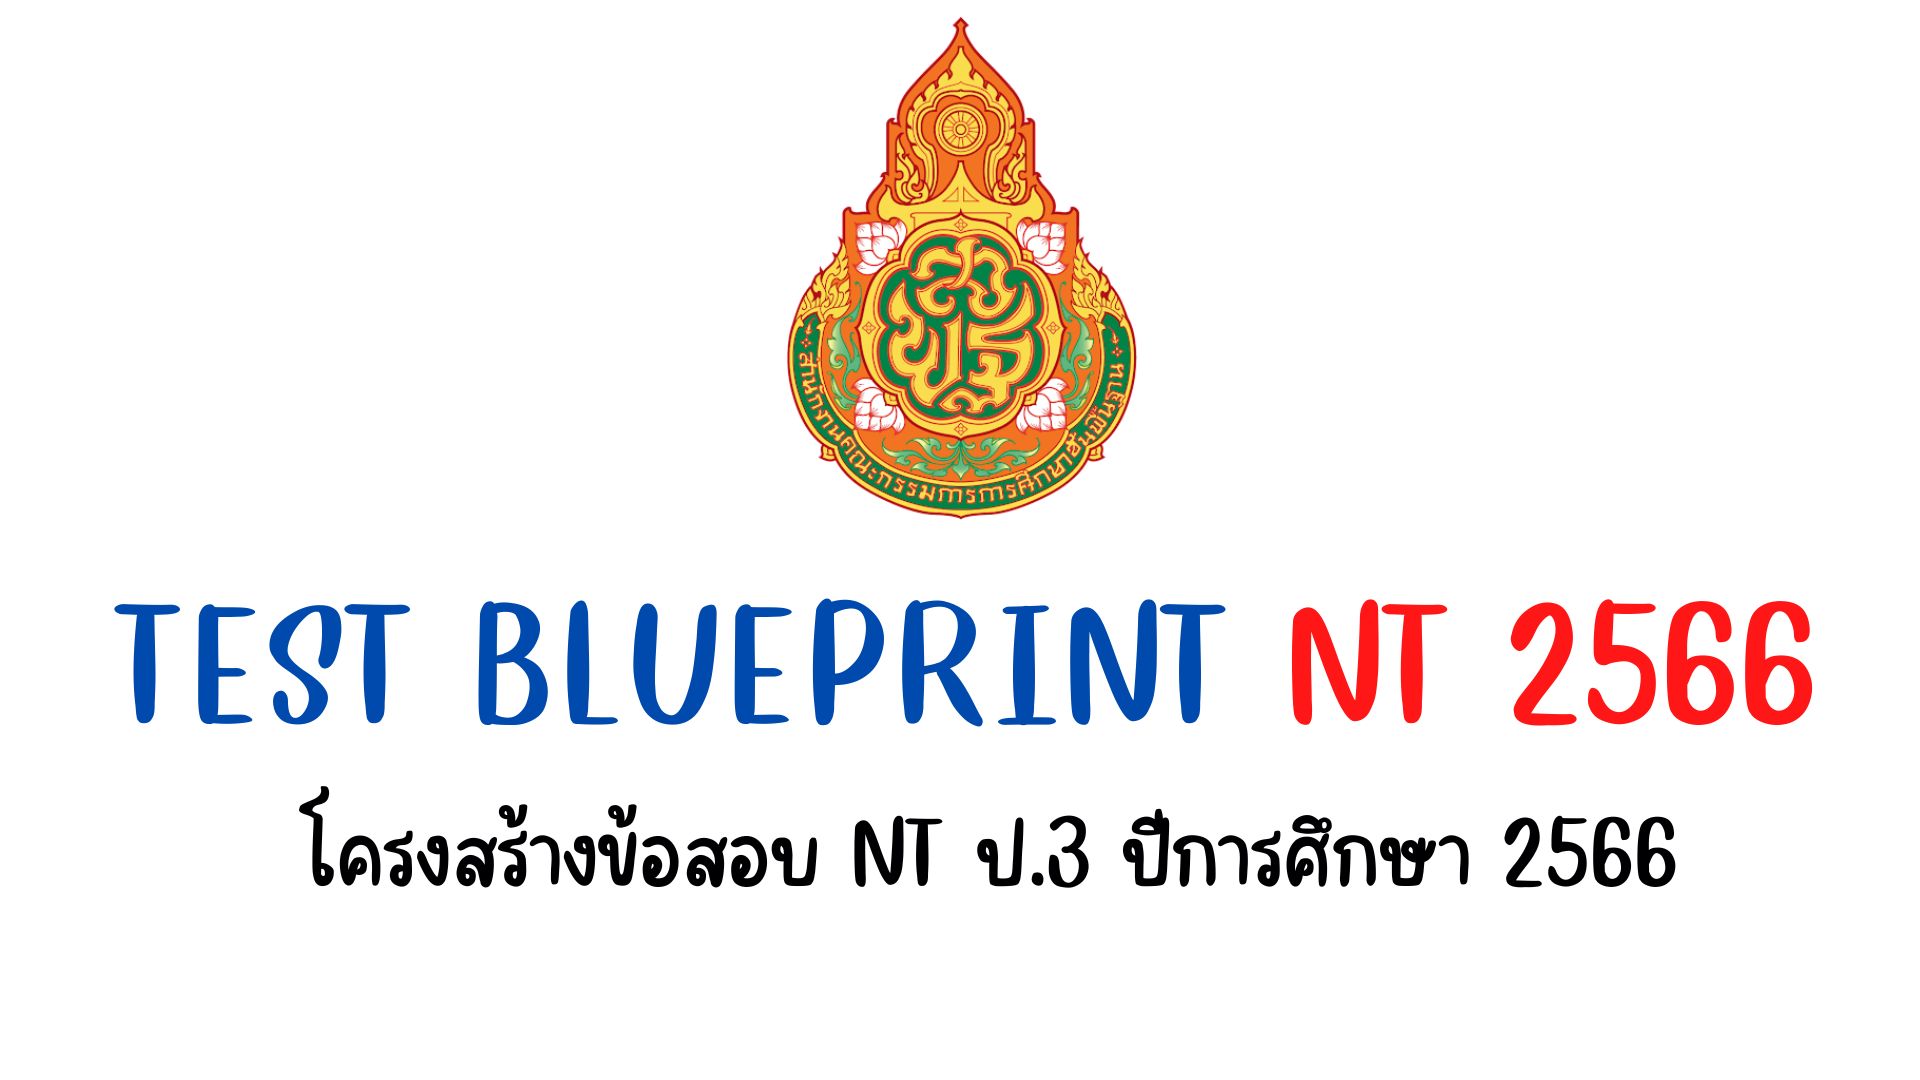 Test Blueprint NT 2566 โครงสร้างข้อสอบ nt ป.3 ปีการศึกษา 2566 แบบทดสอบด้านคณิตศาสตร์ และ แบบทดสอบด้านภาษาไทย สำหรับการทดสอบระดับชาติ ชั้นป.3 ปีการศึกษา 2566 (NT 2566)